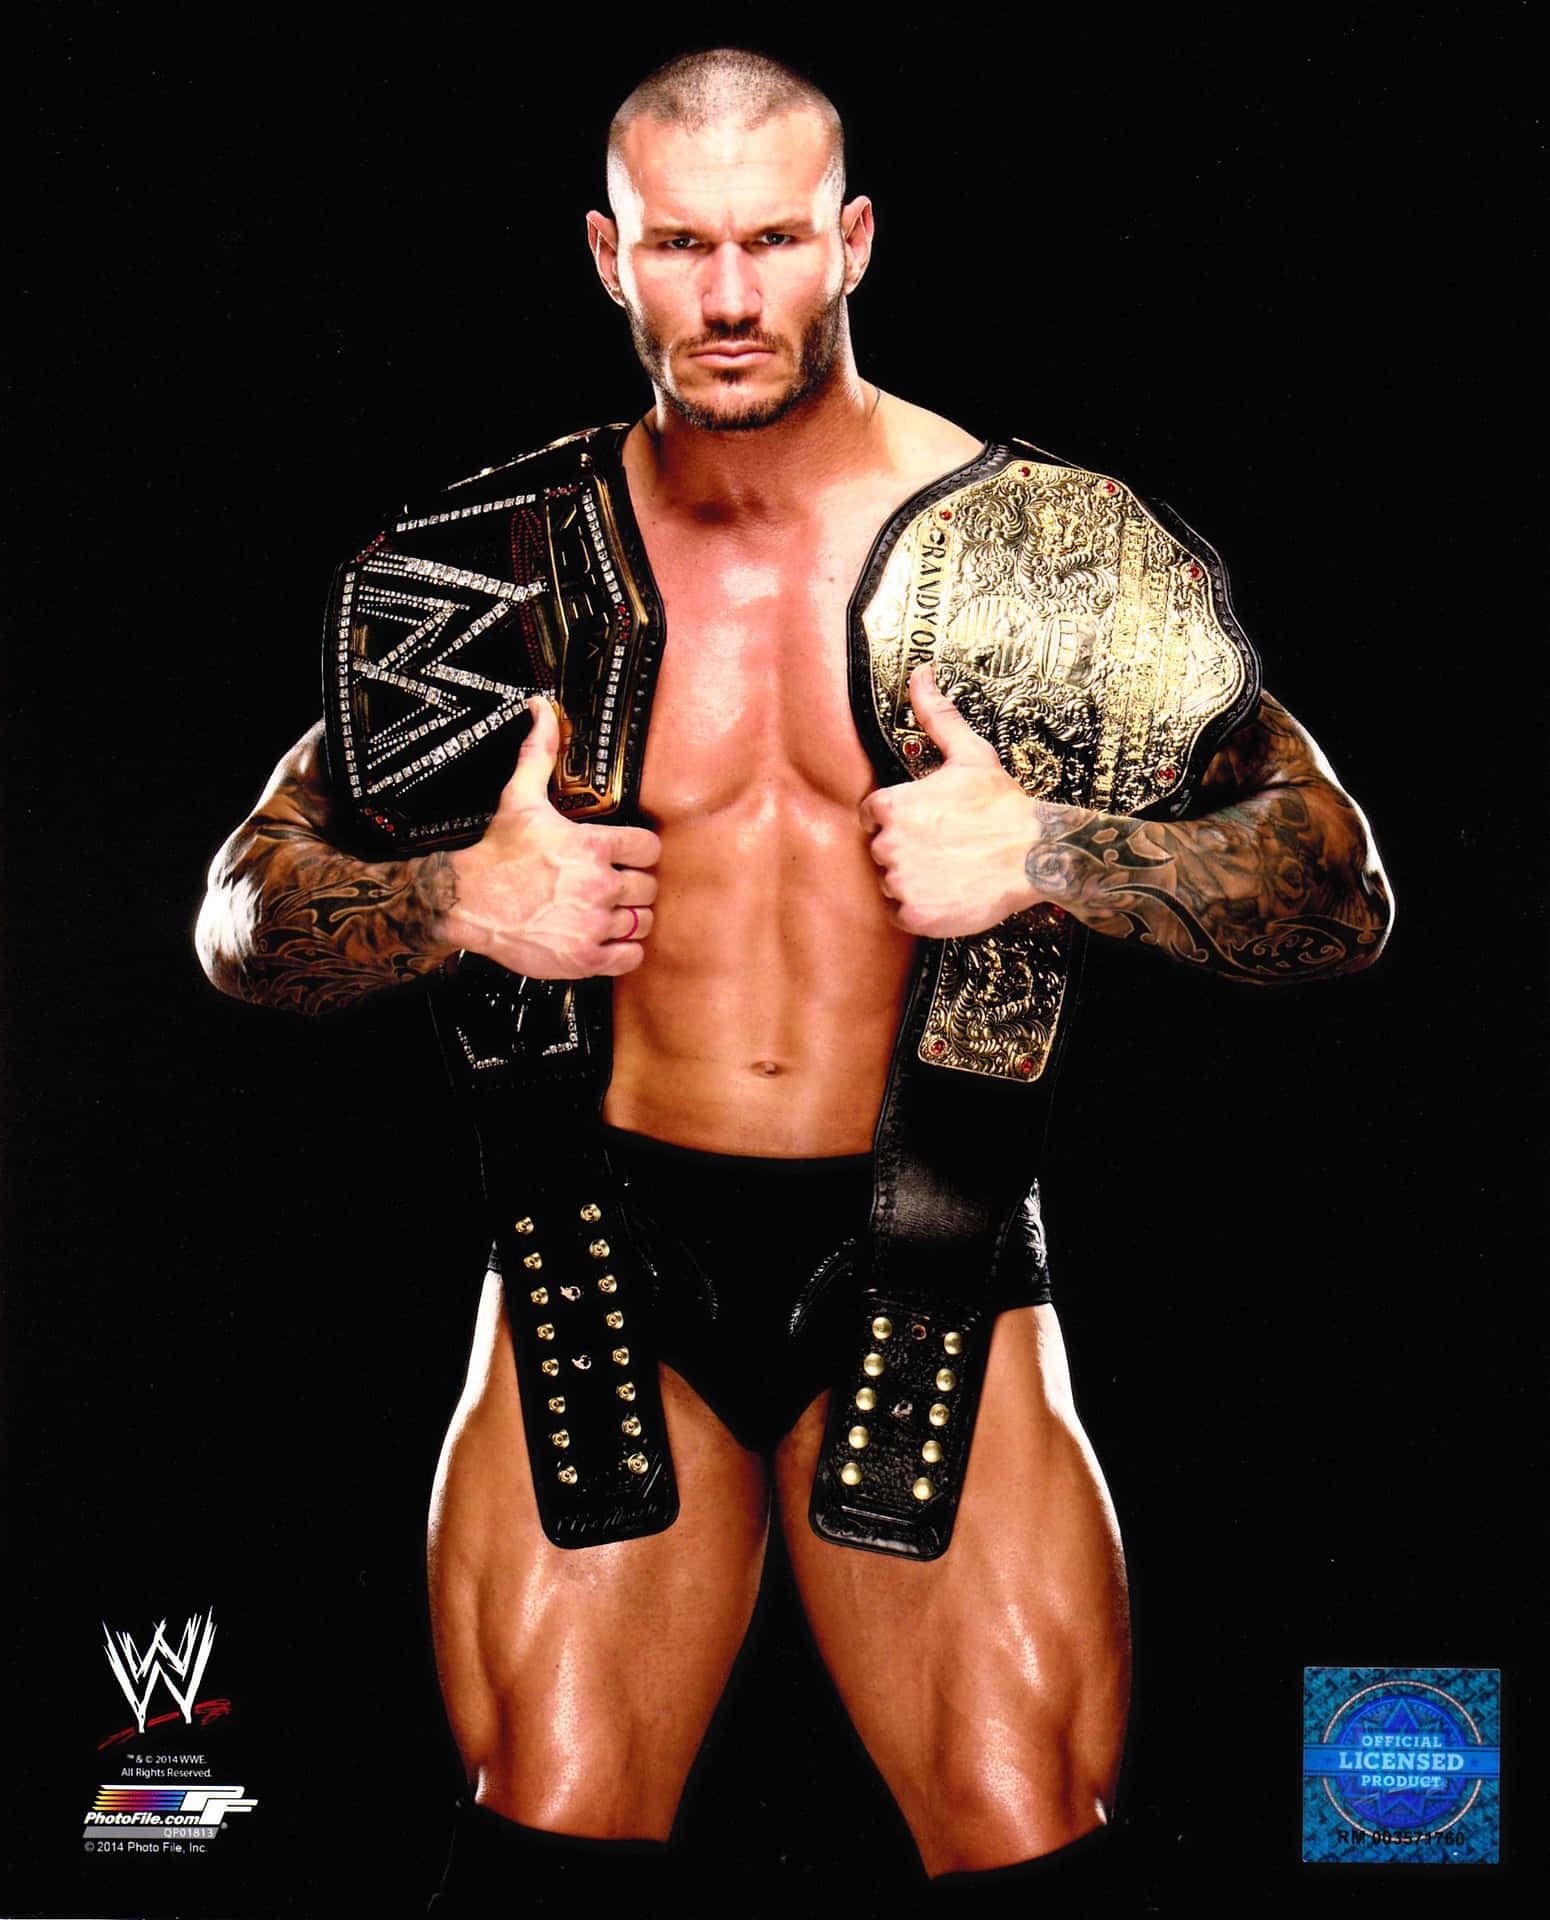 Wwe Wrestler John Cena Holding His Belts Wallpaper